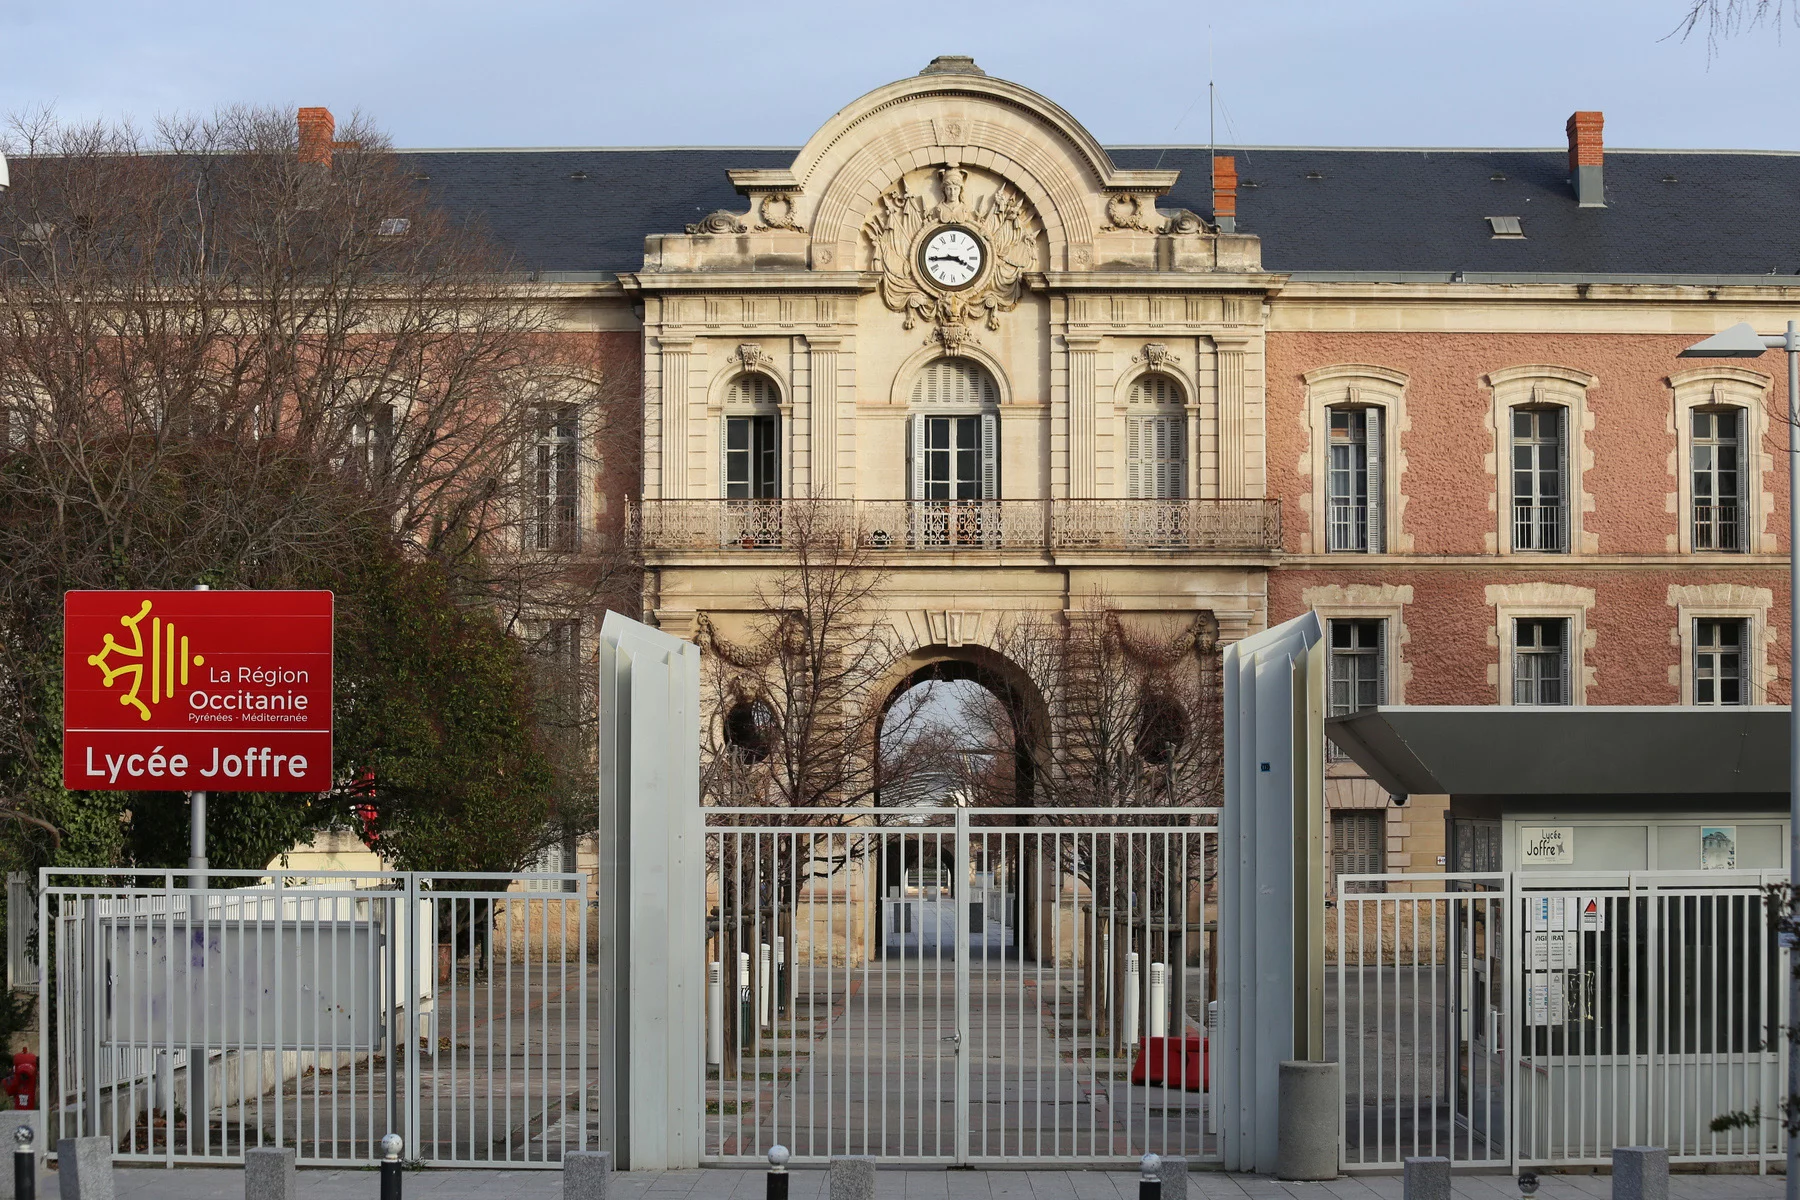 Lycée Joffre in Montpellier